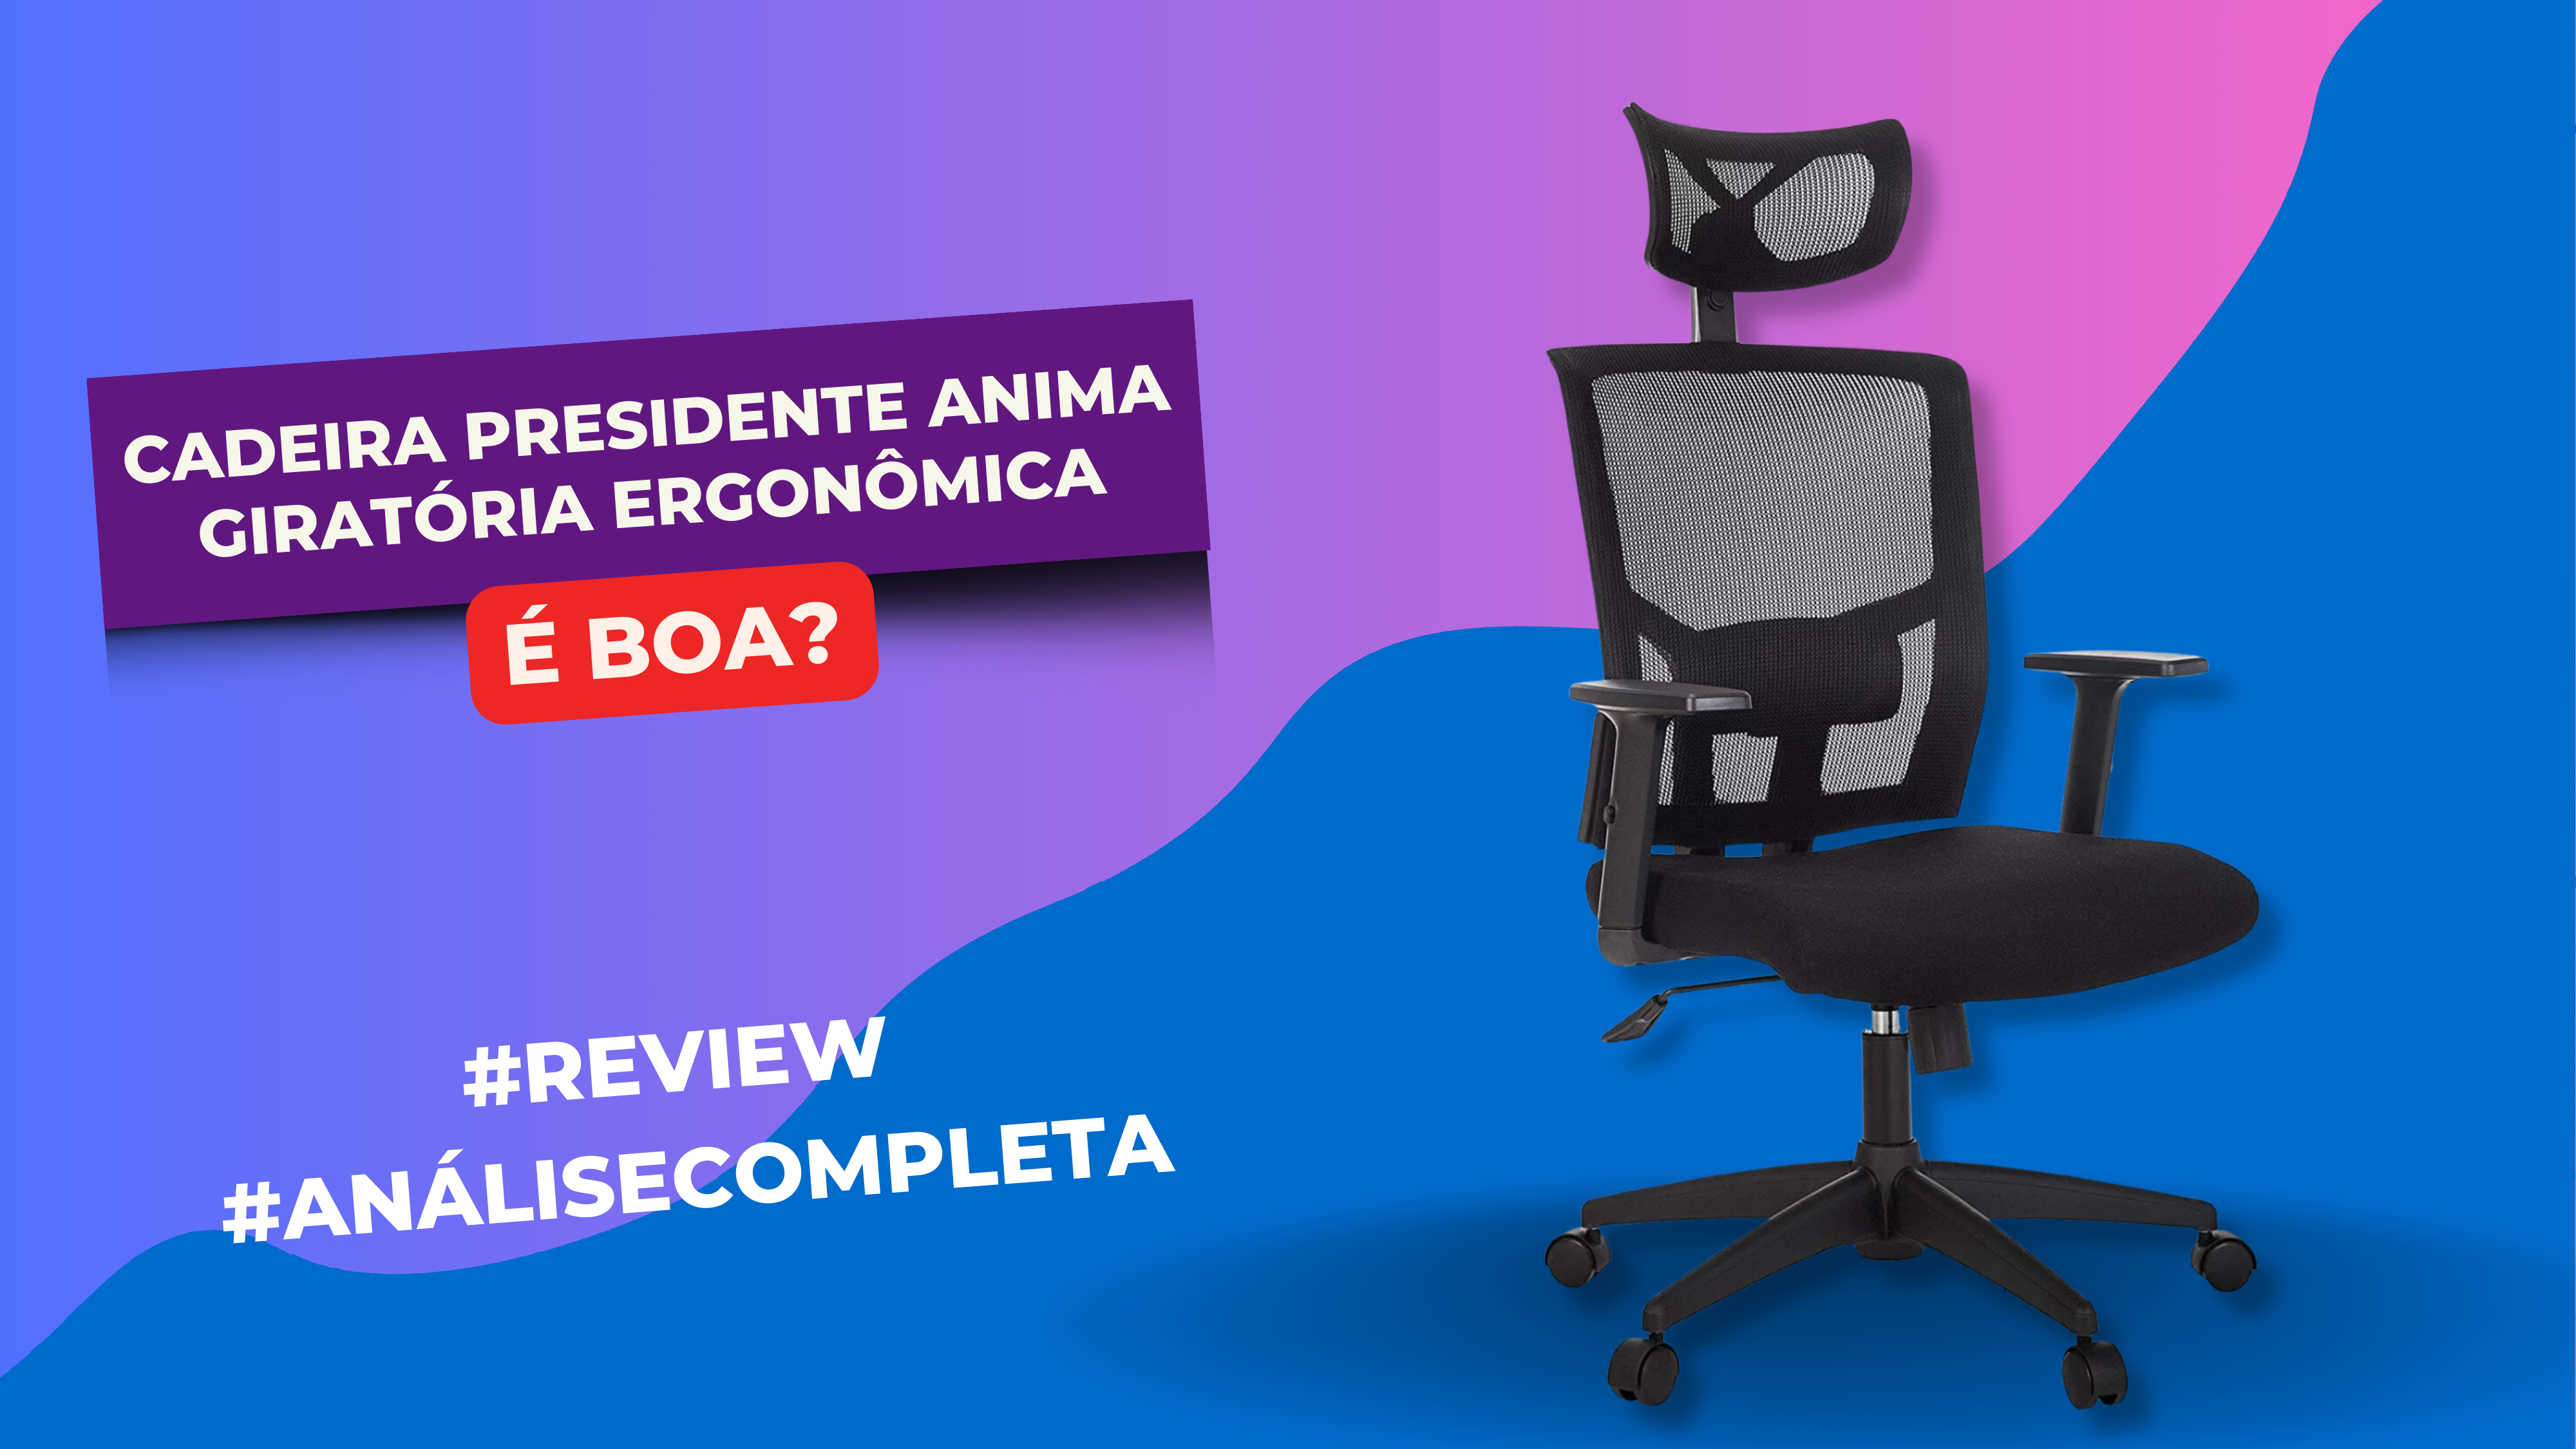 Cadeira Presidente Anima Giratória Ergonômica é Boa? #Review #Resenha #Avaliação